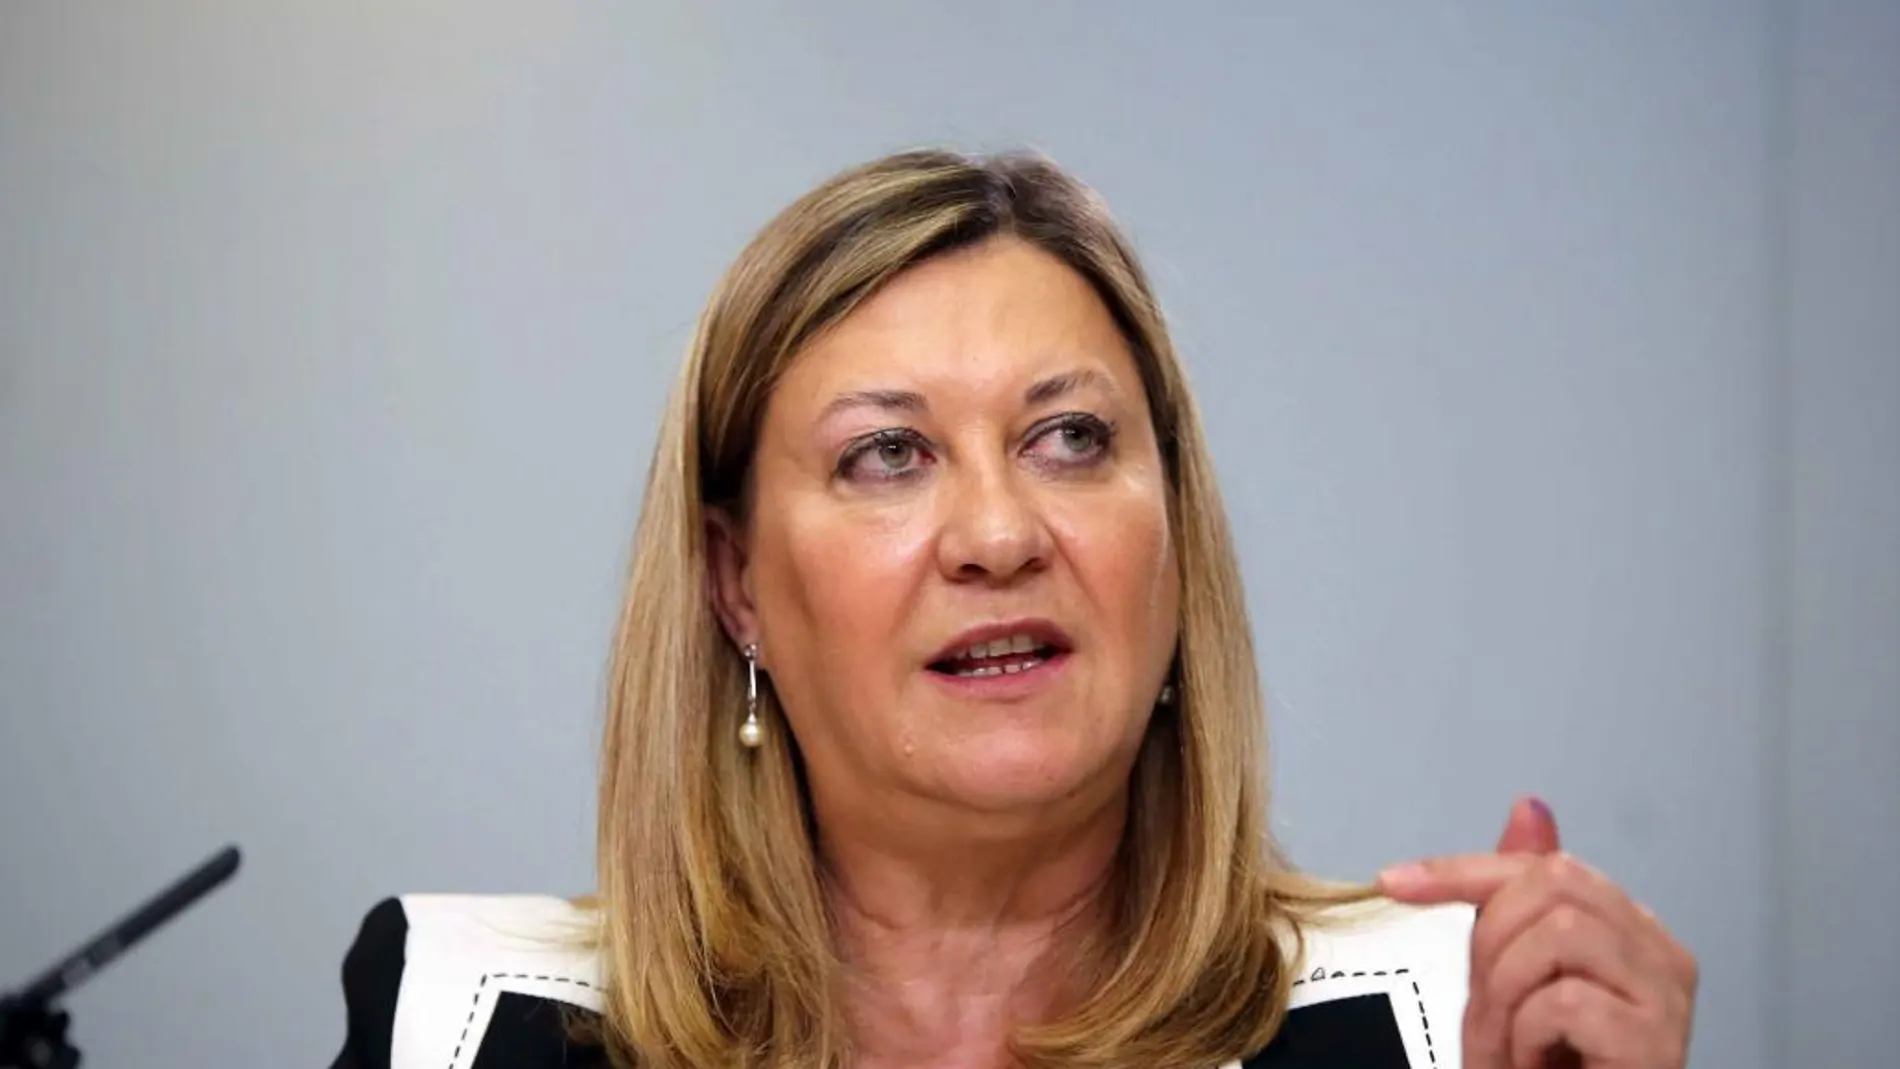 La consejera de Hacienda, Pilar del Olmo, vuelve a mostrar su descontento con el ministro Montoro